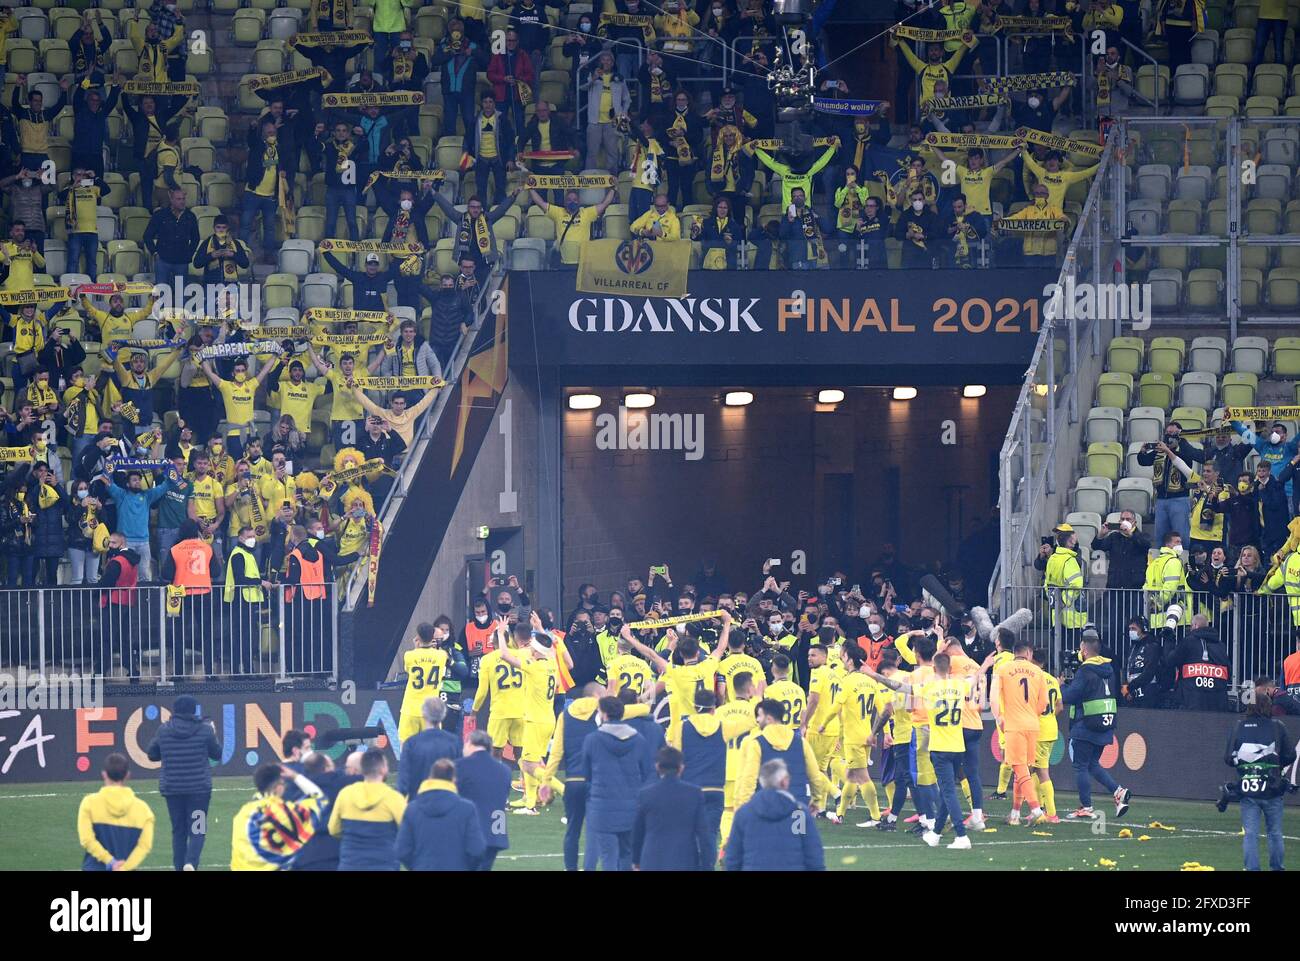 Villarreal feiert mit seinen Fans nach dem Gewinn des UEFA Europa League Finales im Danziger Stadion, Polen. Bilddatum: Mittwoch, 26. Mai 2021. Stockfoto